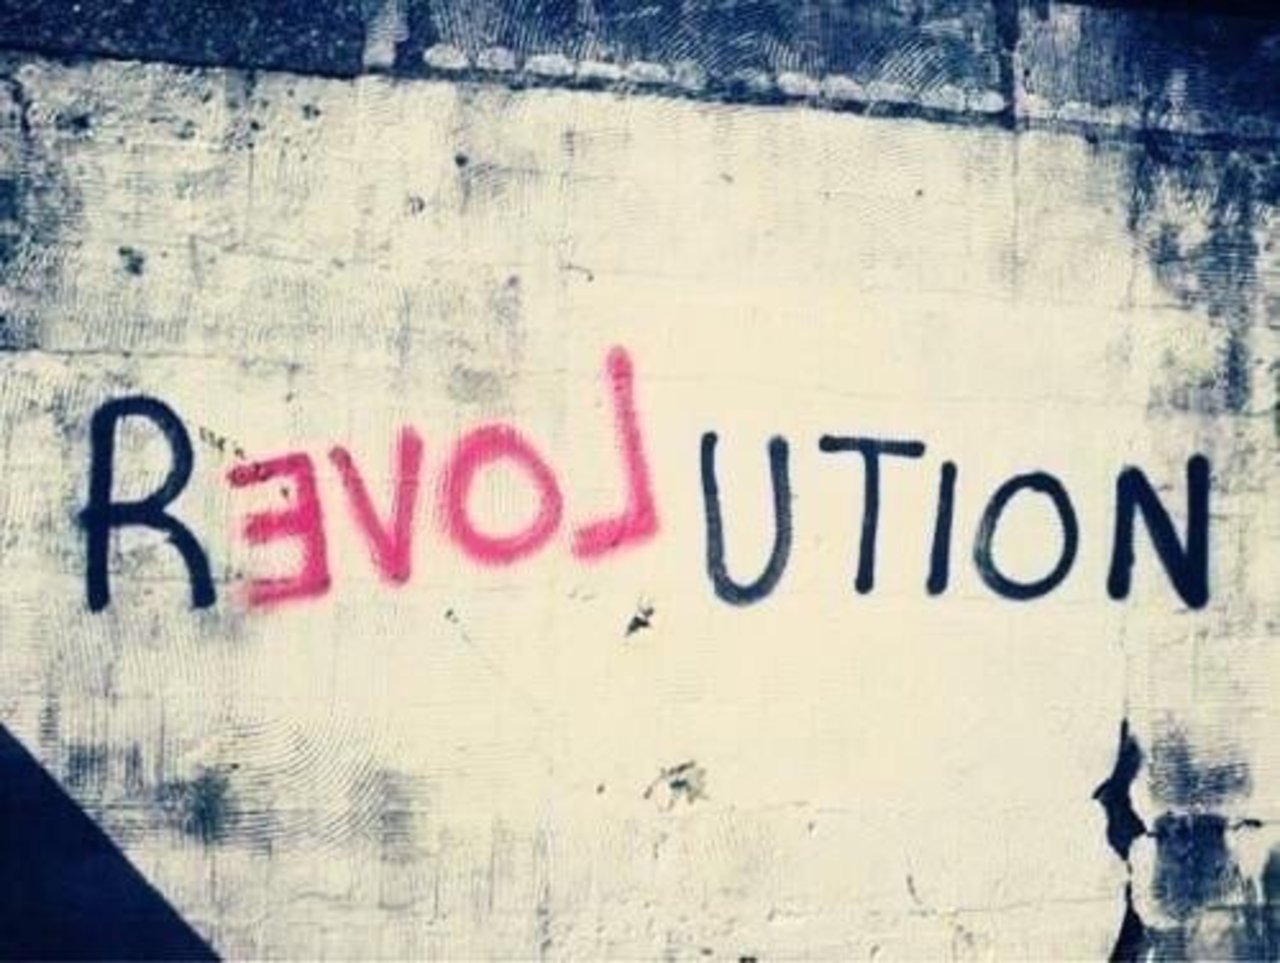 #Love Revolution – #Creative #StreetArt – Be ▲rtist – Be ▲rt Magazine https://beartistbeart.com/2016/12/02/love-revolution-creative-streetart/?utm_campaign=crowdfire&utm_content=crowdfire&utm_medium=social&utm_source=twitter https://t.co/QVOVN58ZNy